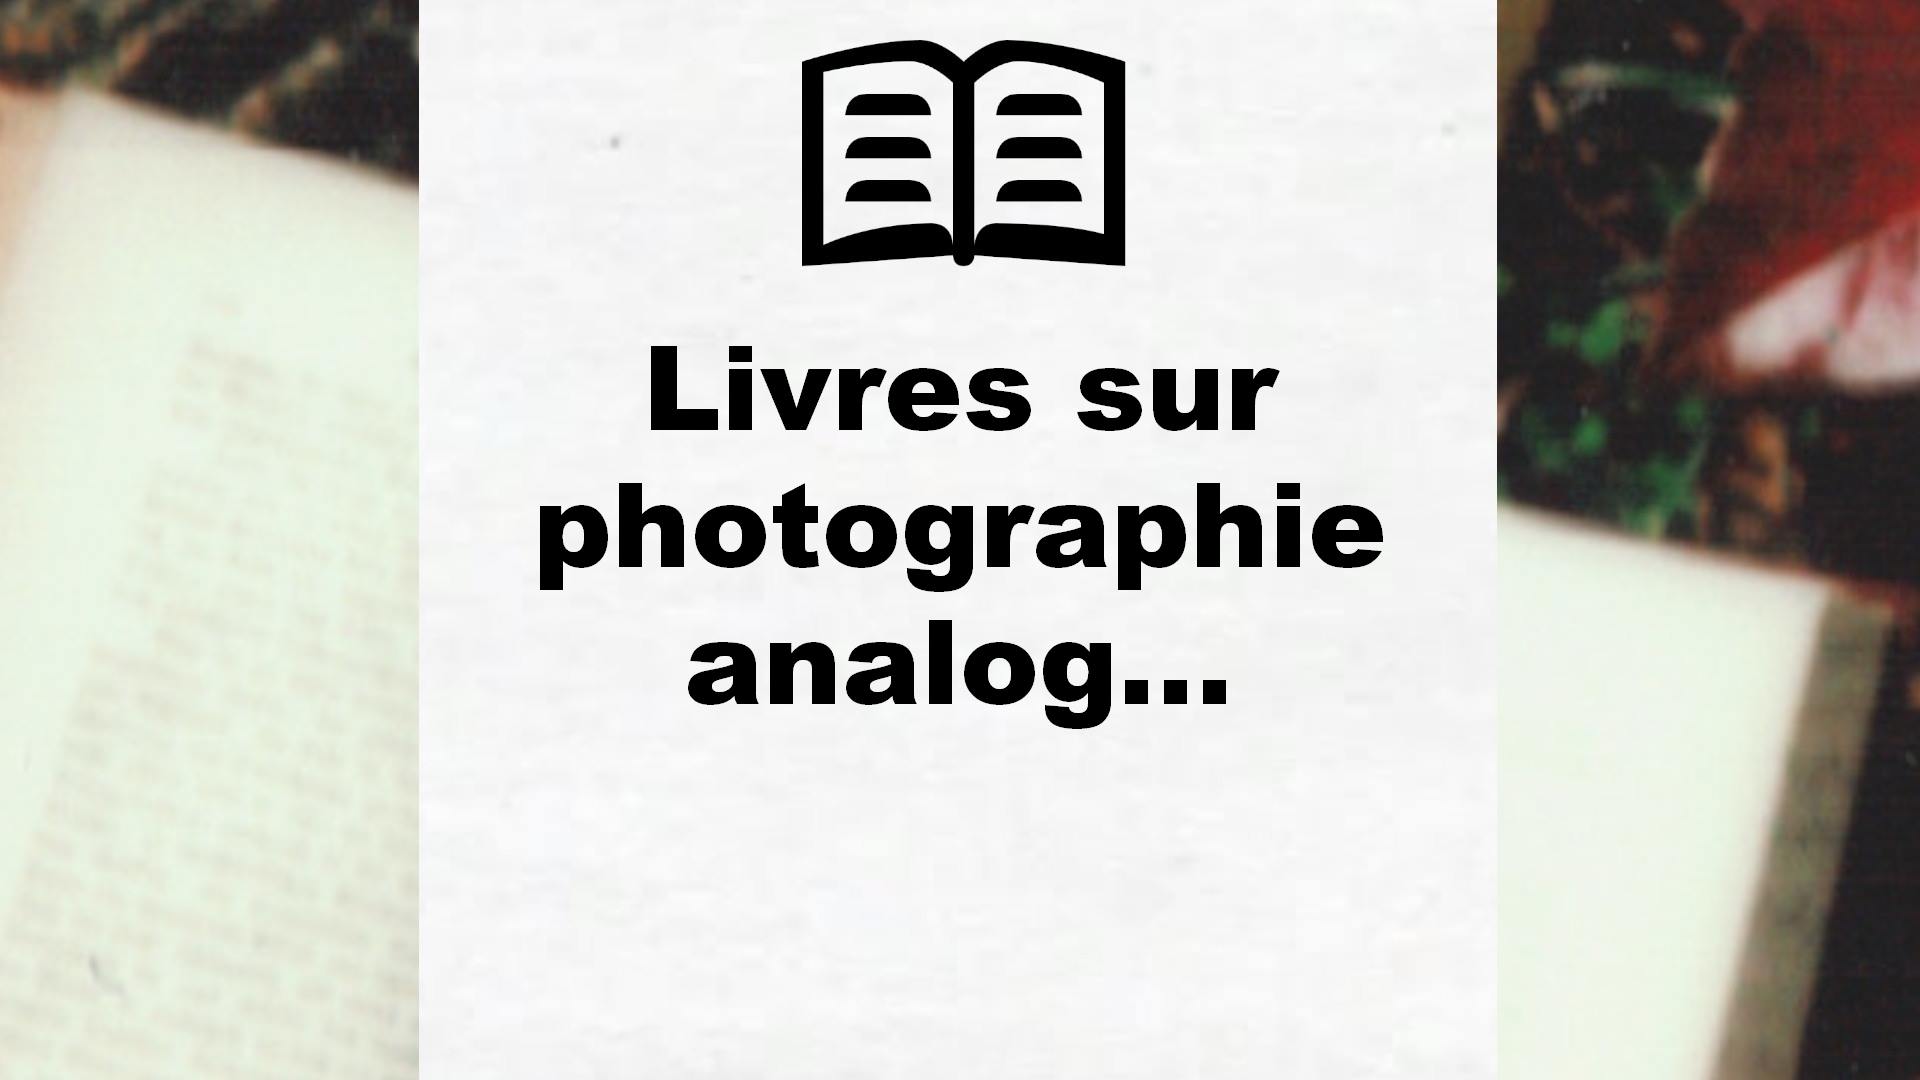 Livres sur photographie analogique